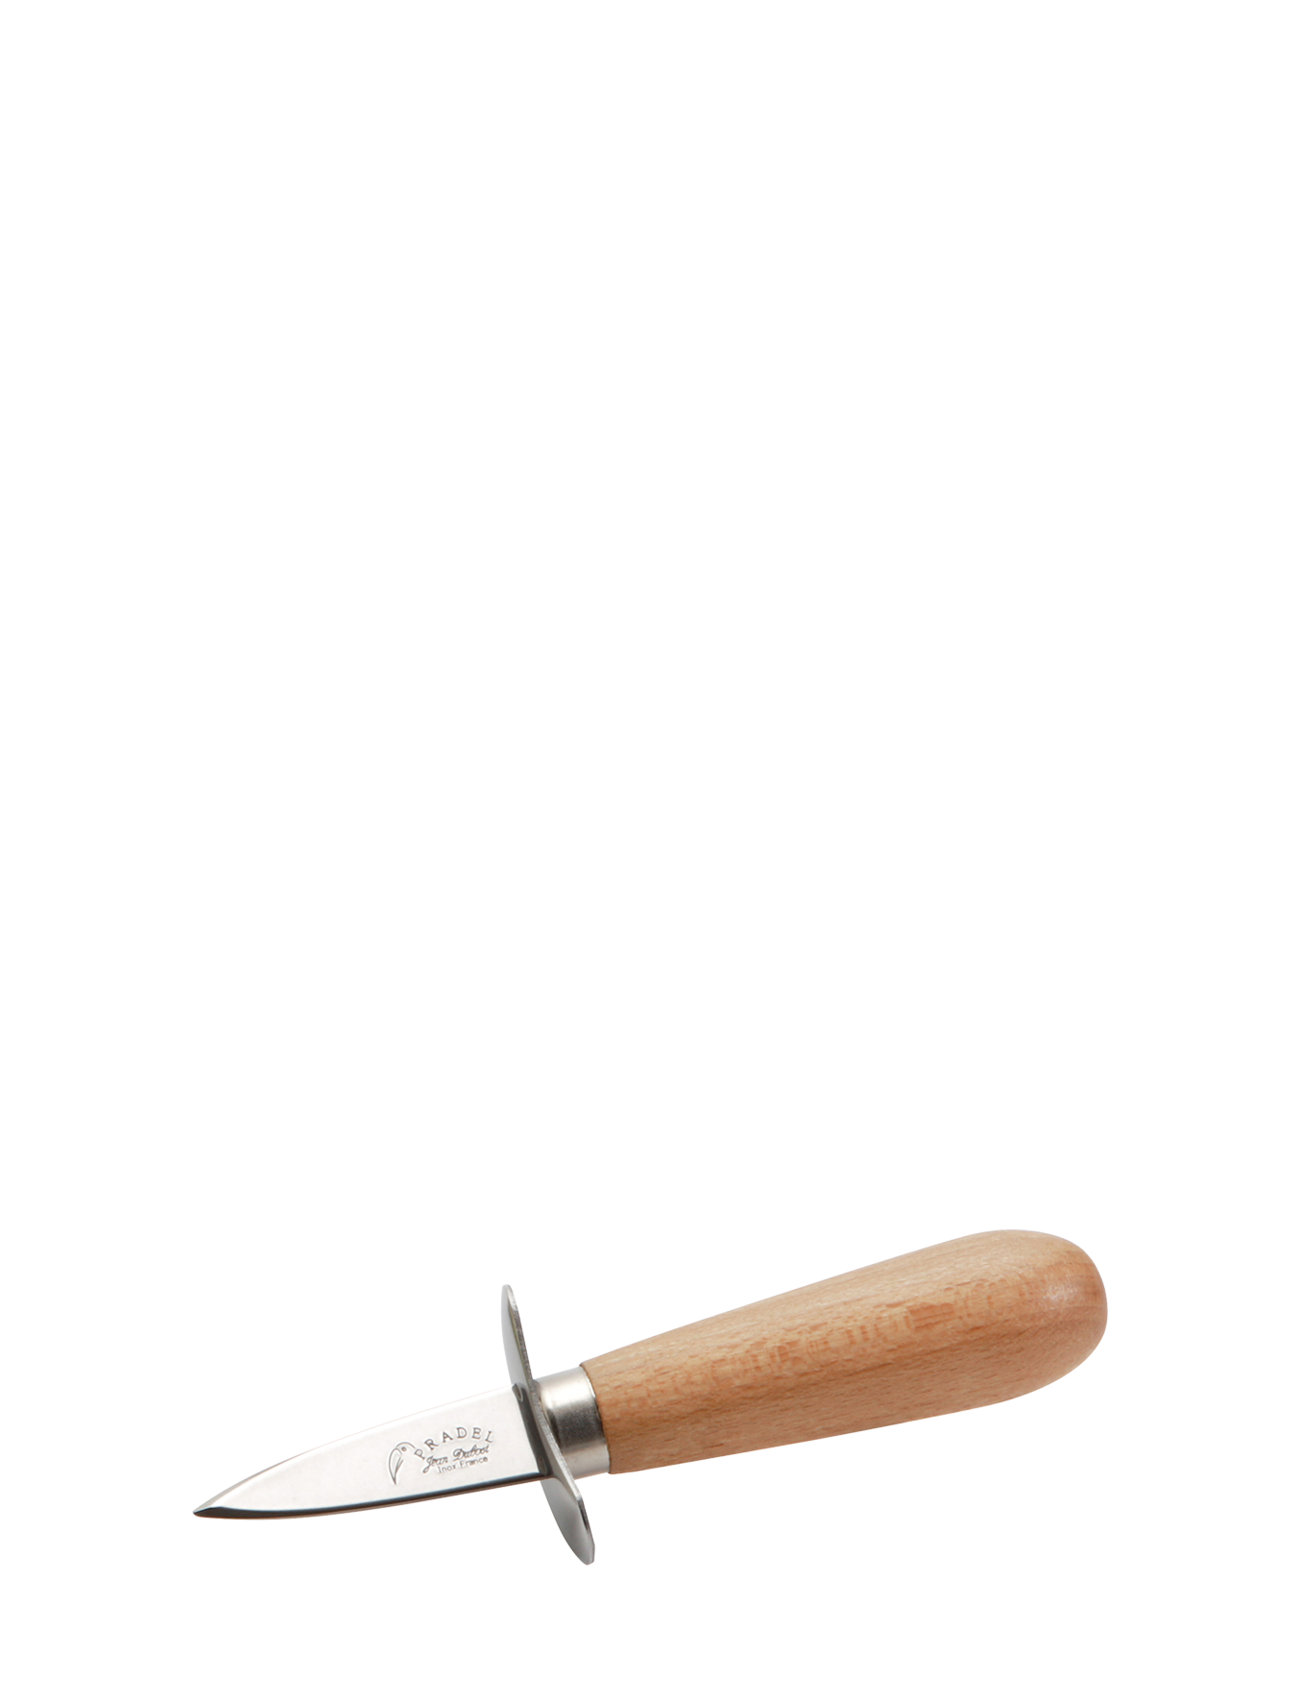 Østerskniv M. Træsskaft Home Tableware Cutlery Seafood Cutlery Sets Brown Jean Dubost